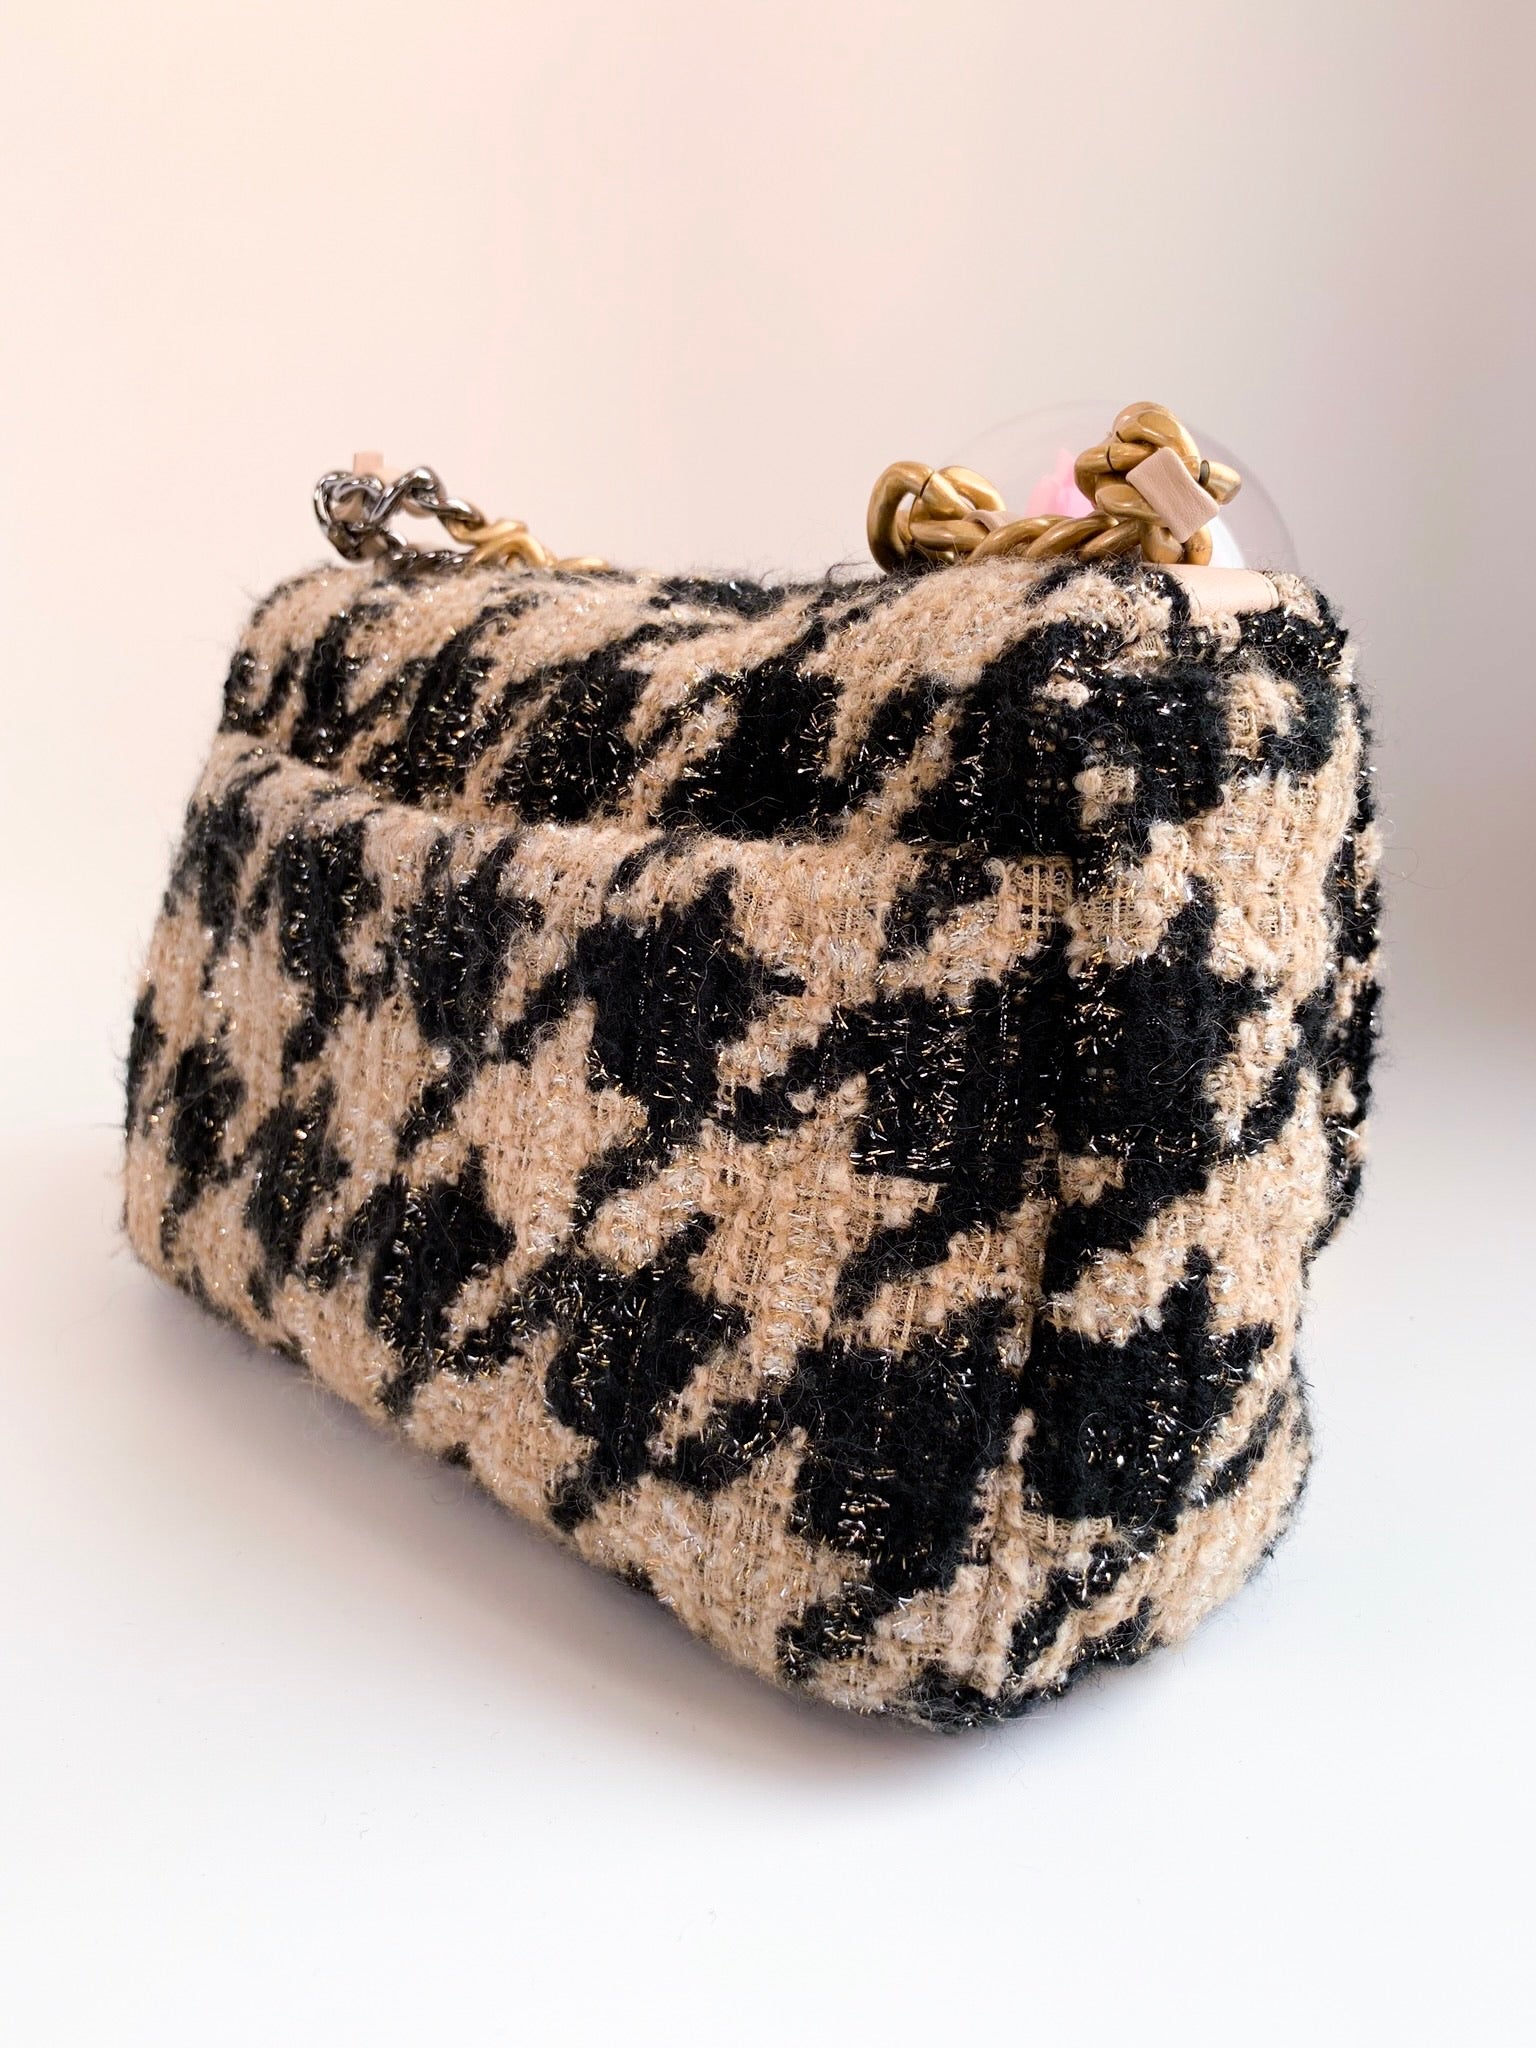 Chanel 19 tweed handbag